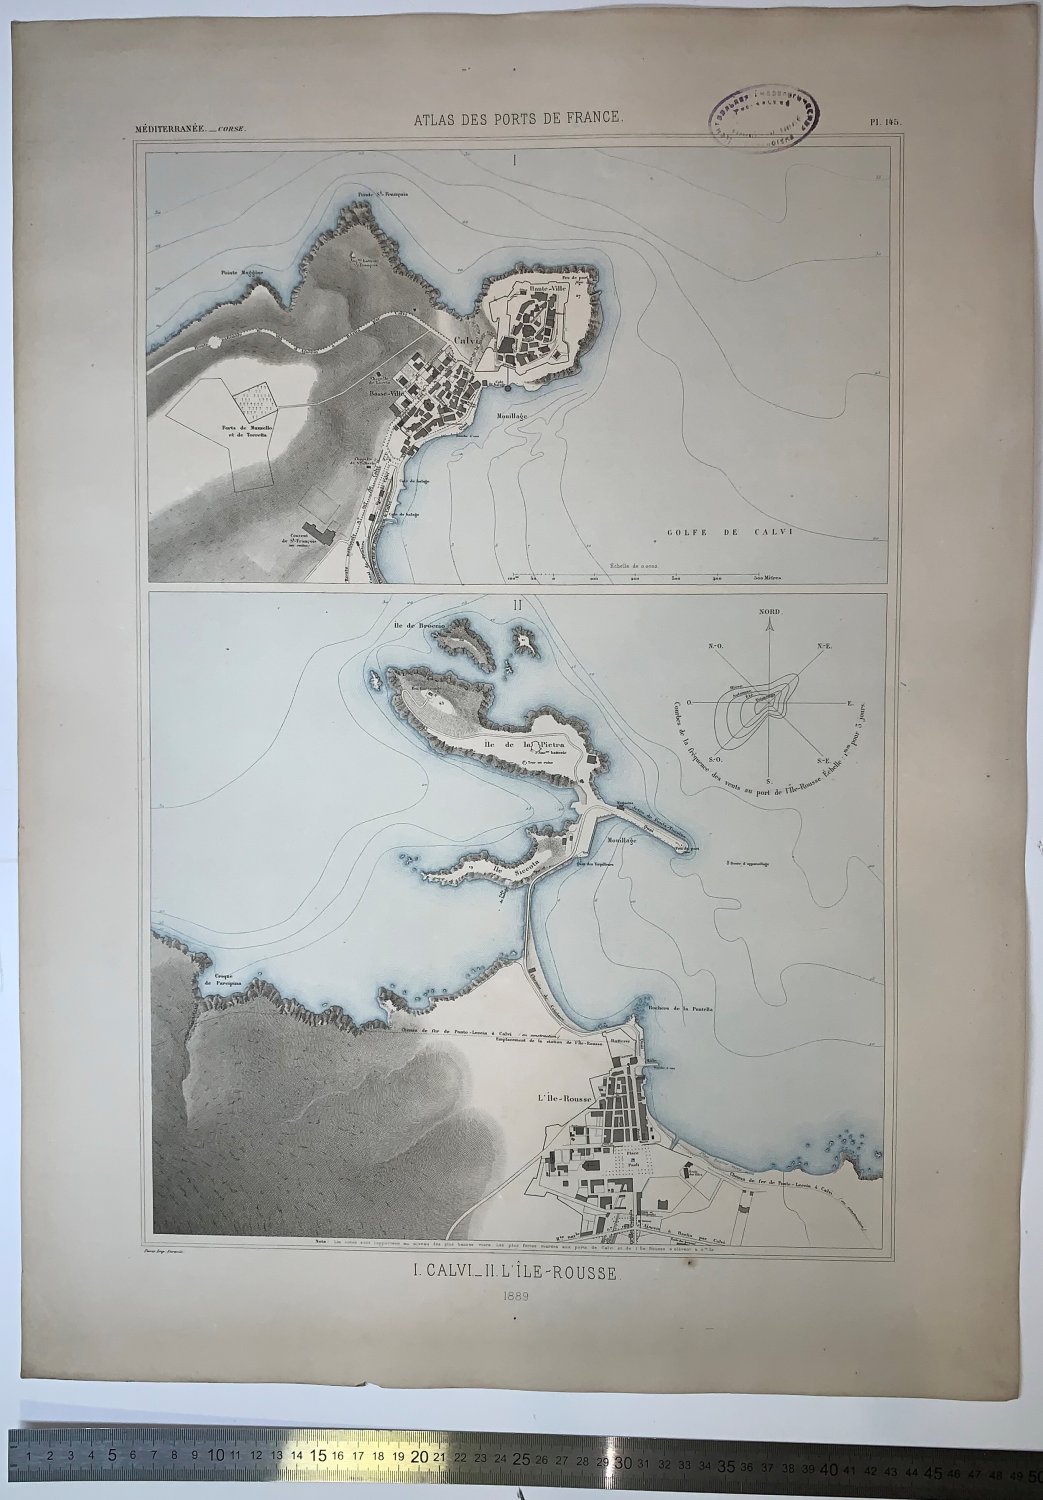 Atlas des ports de France. I. Calvi. II. L'ile Rousse